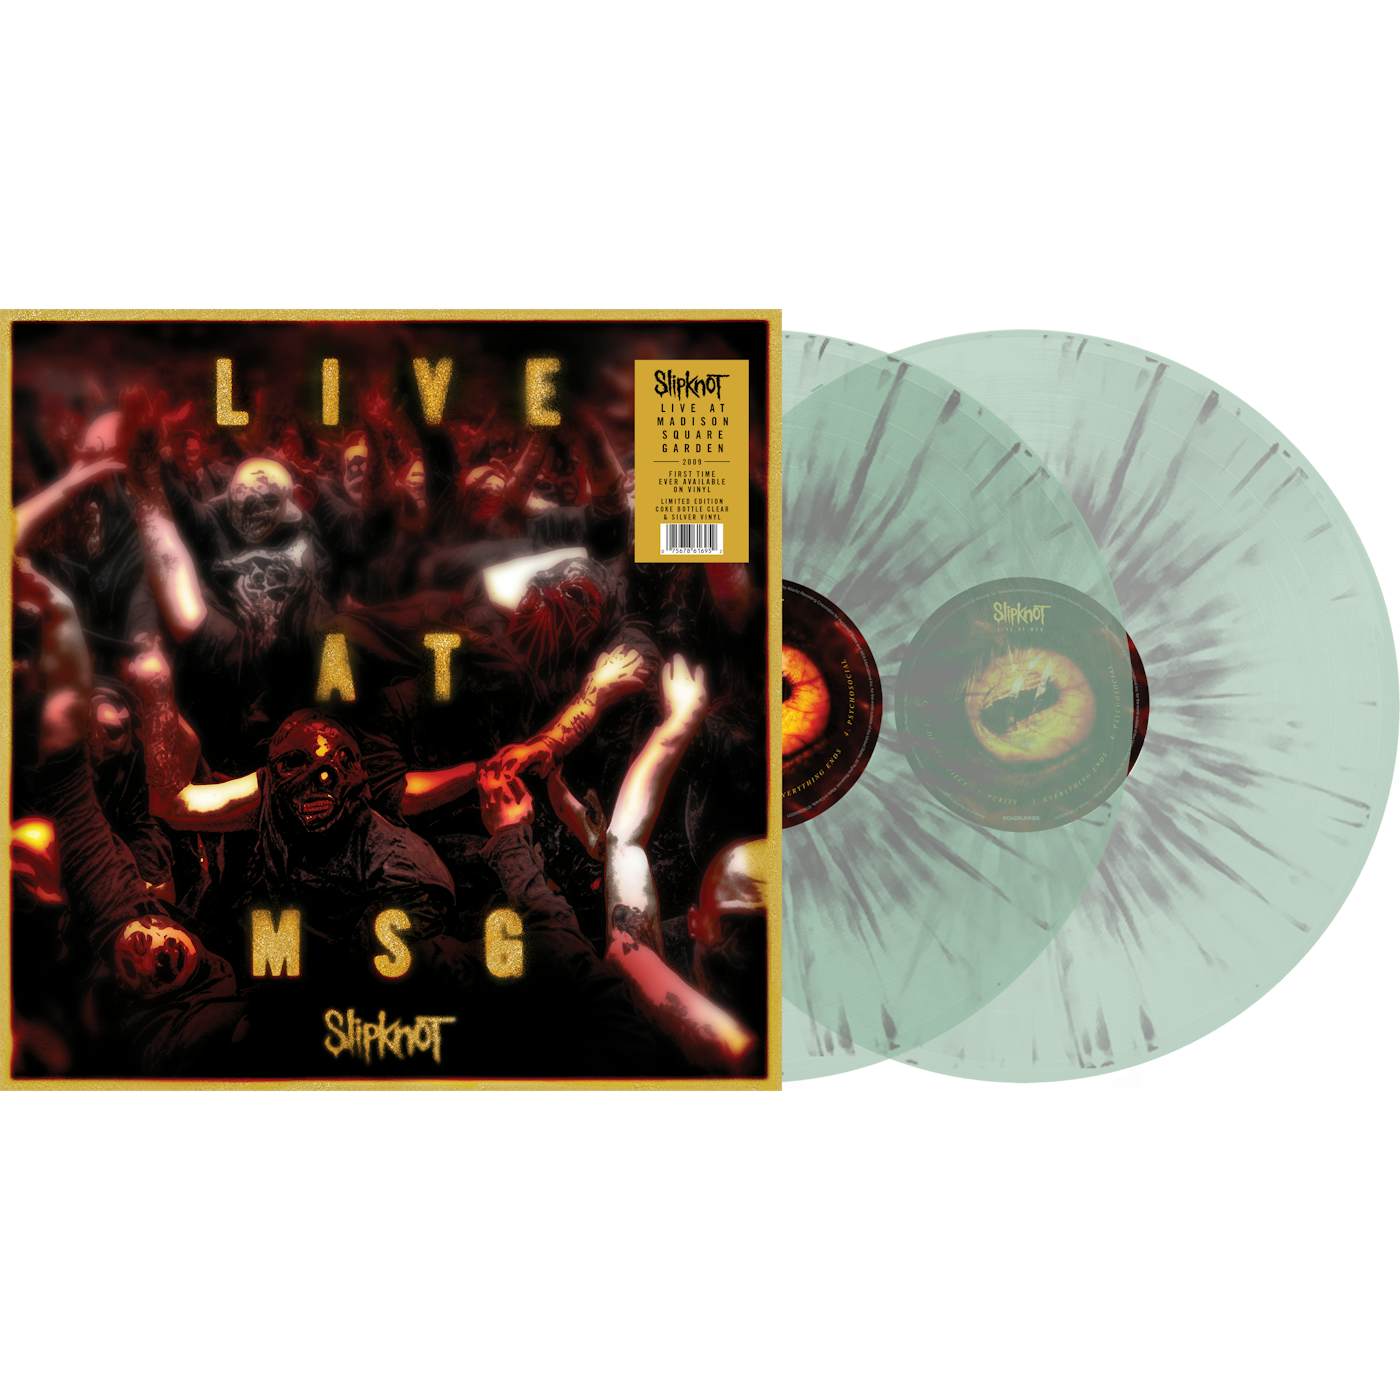 Slipknot "Live At MSG" Vinyl in Bottle Clear